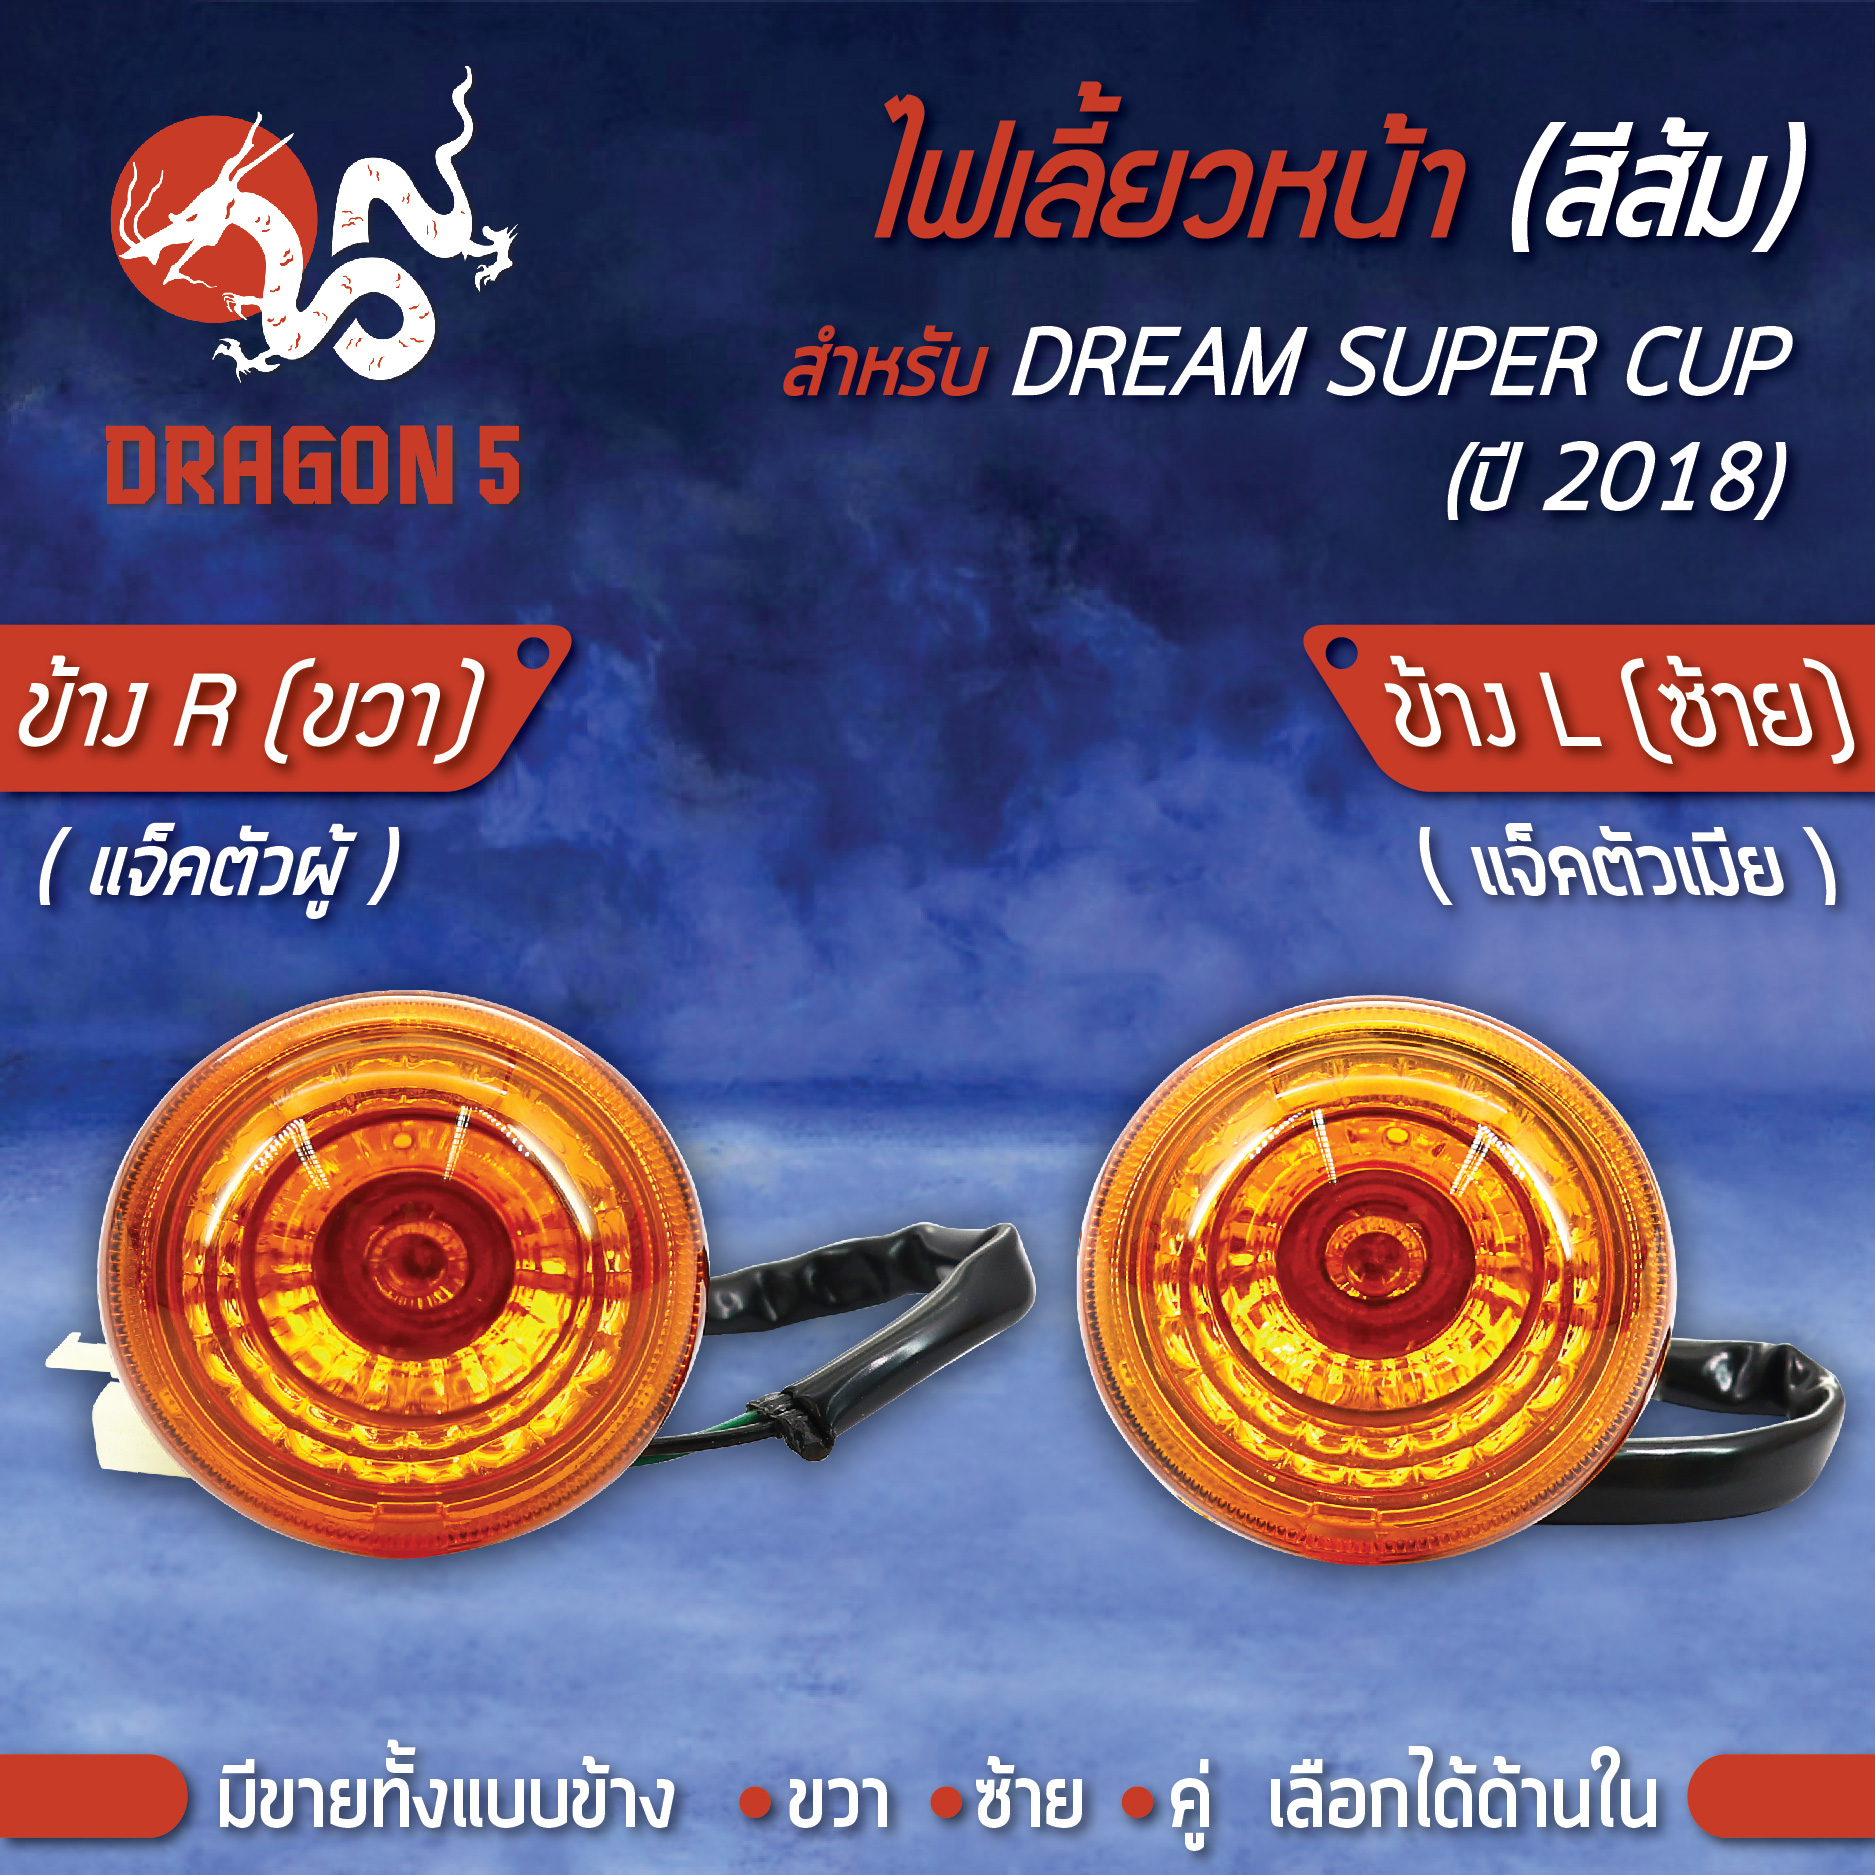 ไฟเลี้ยวหน้า DREAM SUPER CUP ปี18,ดรีมซุปเปอร์คัพ ปี18ไฟตากลม, ไฟเลี้ยวหน้า DREAM SUPER CUP ปี18 (ส้ม) HMA มีข้างซ้าย,ขวา,คู่ เลือกด้านใน